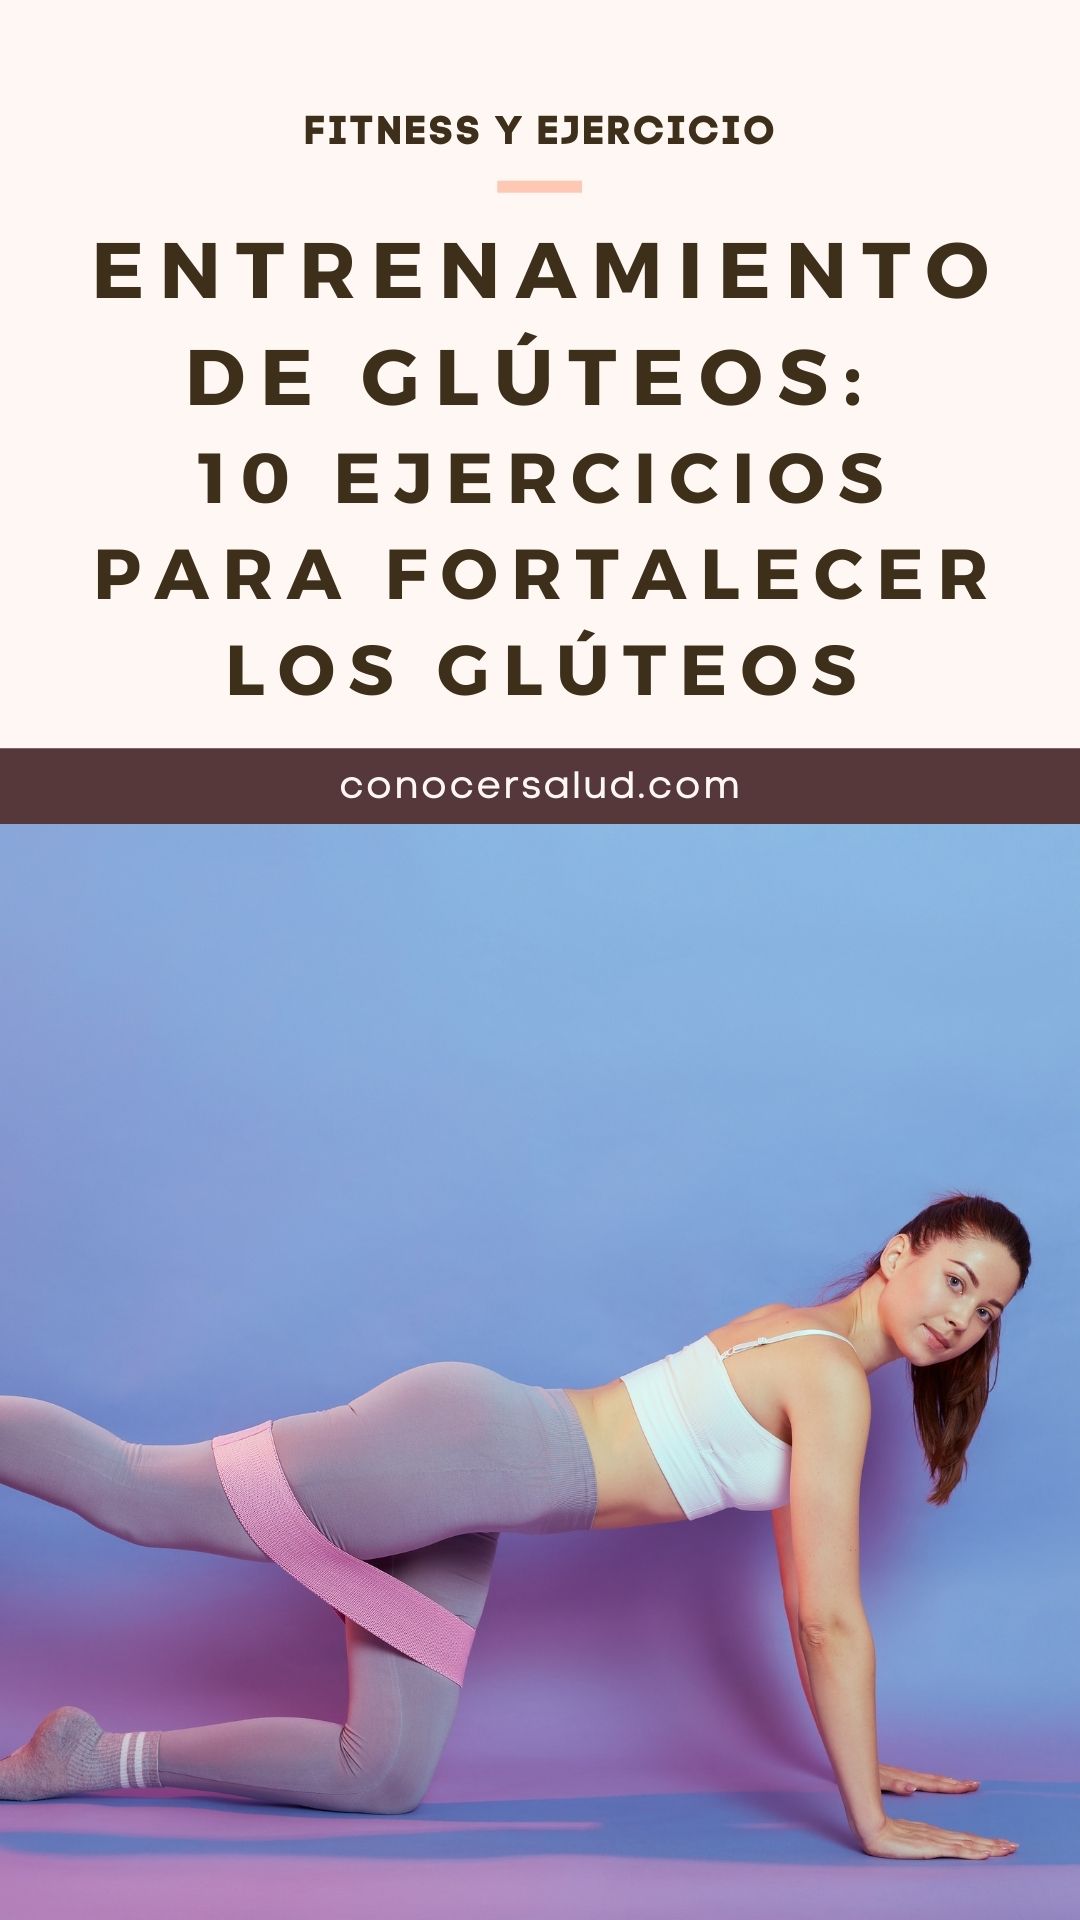 Entrenamiento de glúteos: 10 ejercicios para fortalecer los glúteos